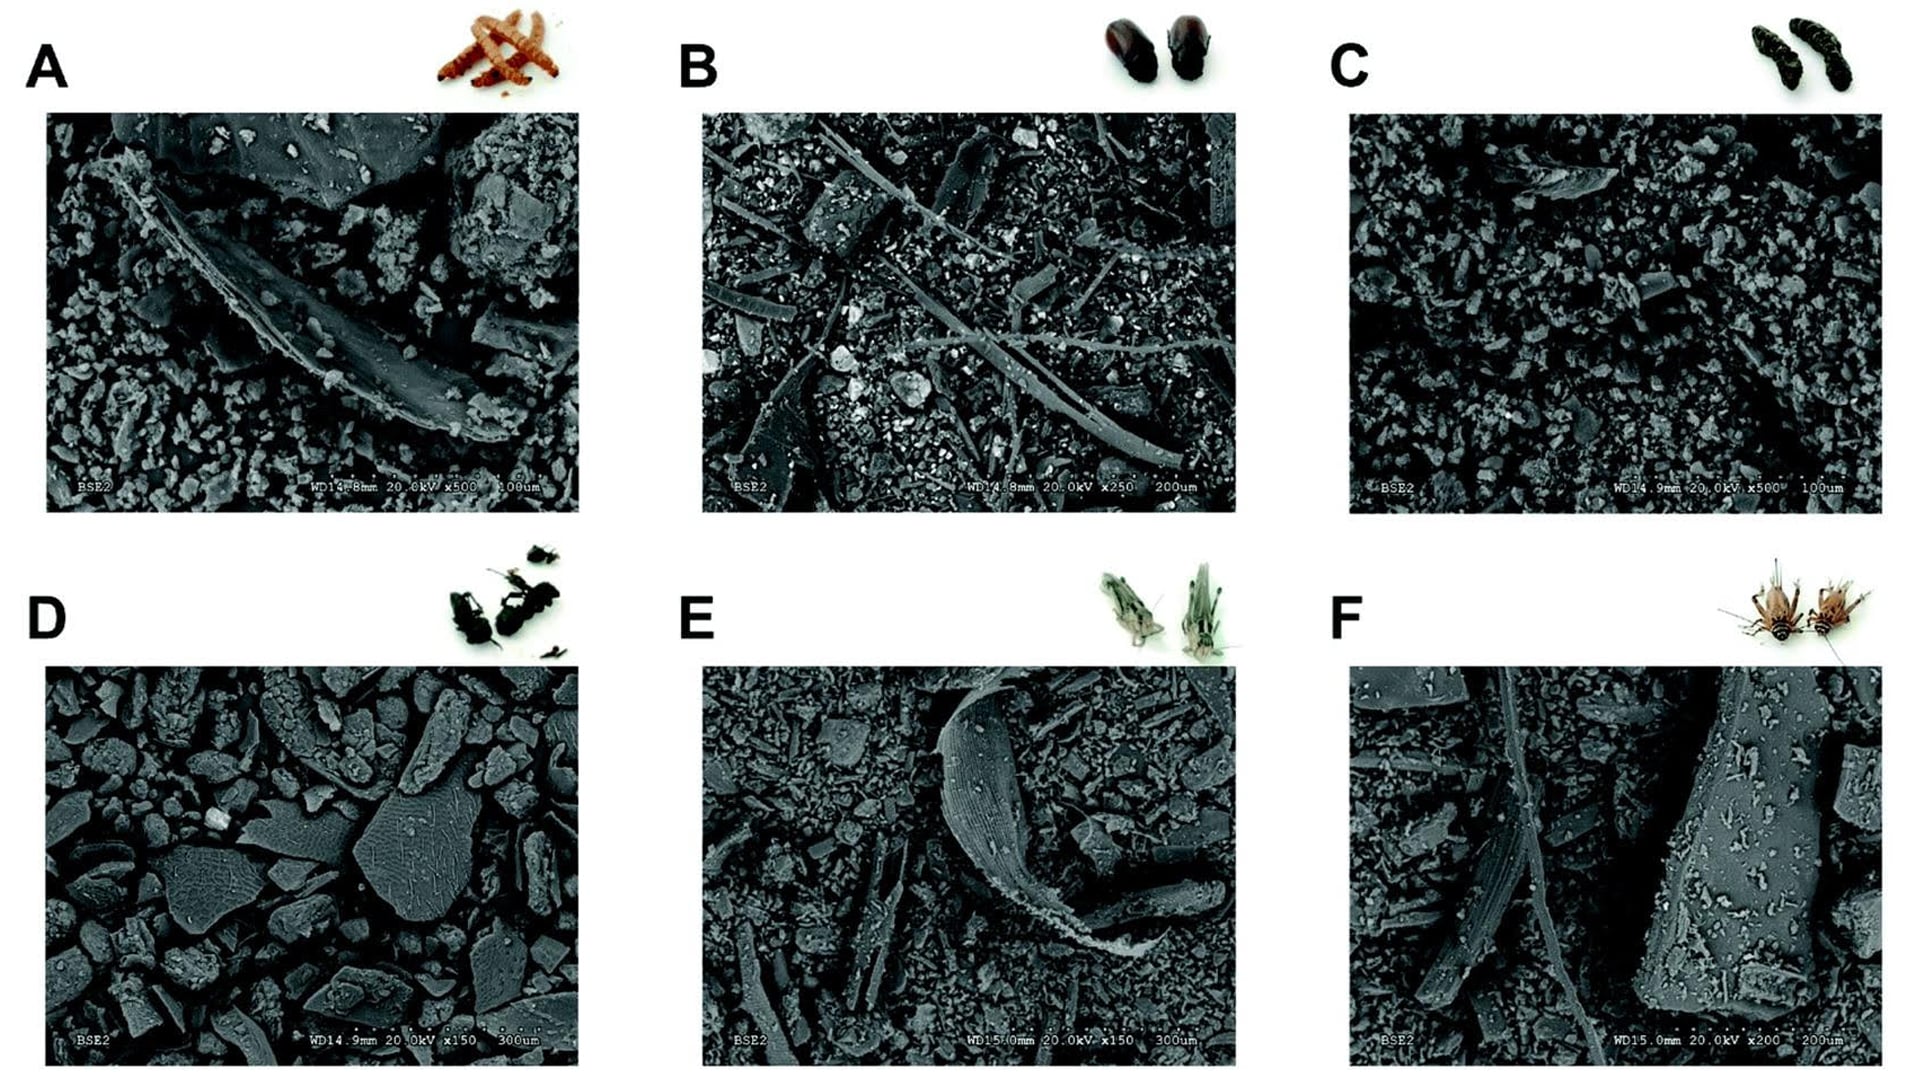 Imágenes obtenidas con microscopía electrónica de barrido (SEM) de varias harinas de diferentes insectos.